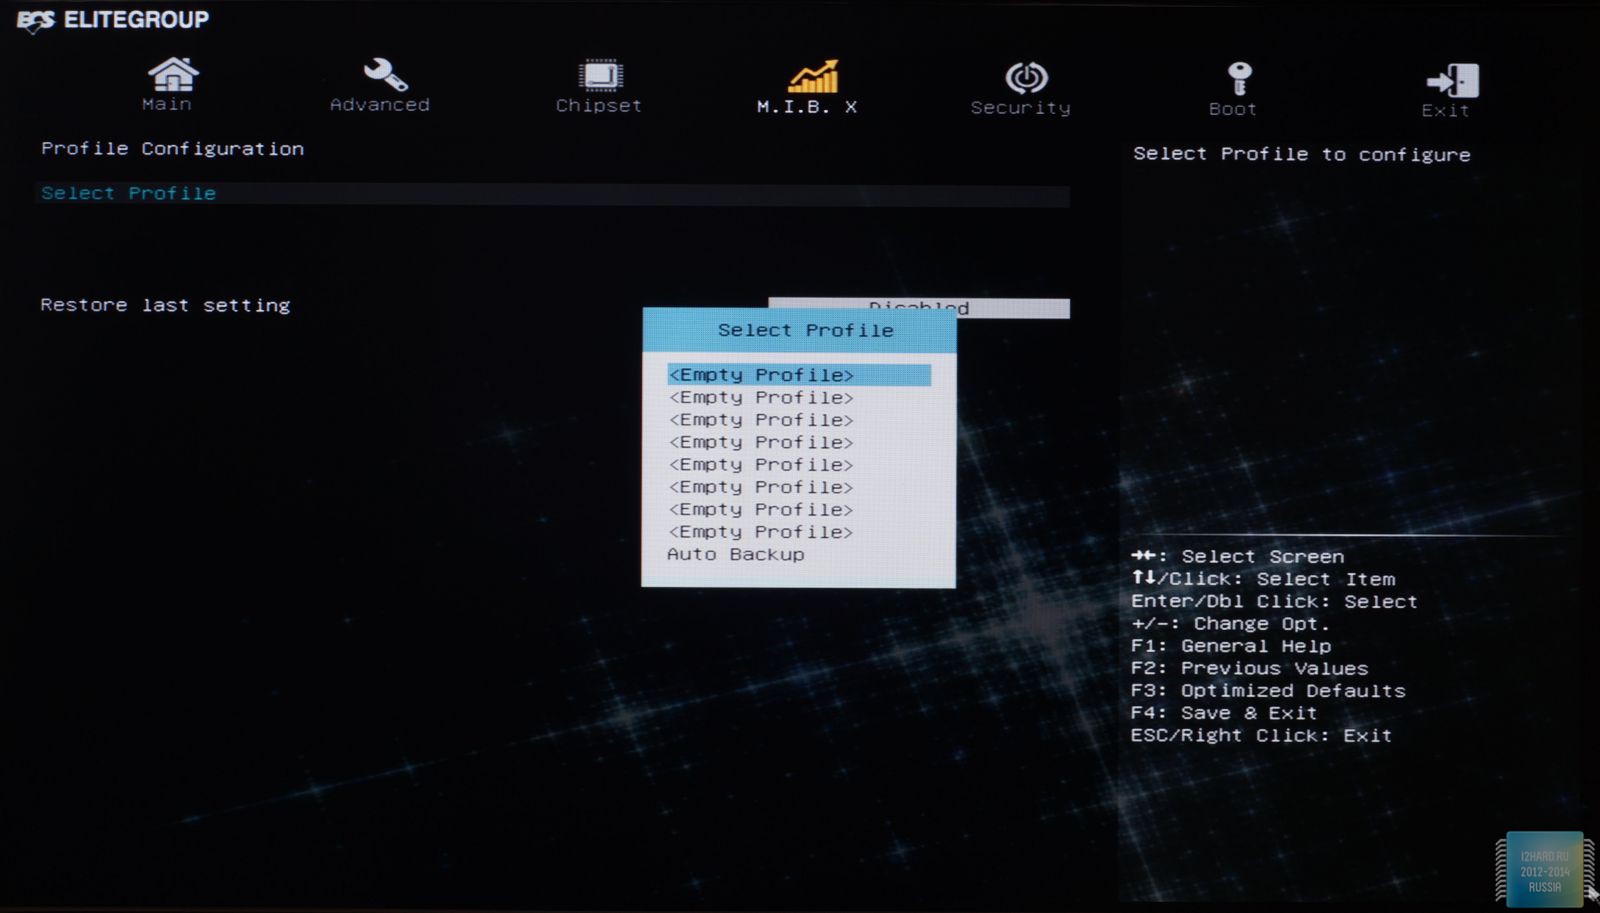 Интерфейс UEFI BIOS материнской платы ECS Z97I-Drone